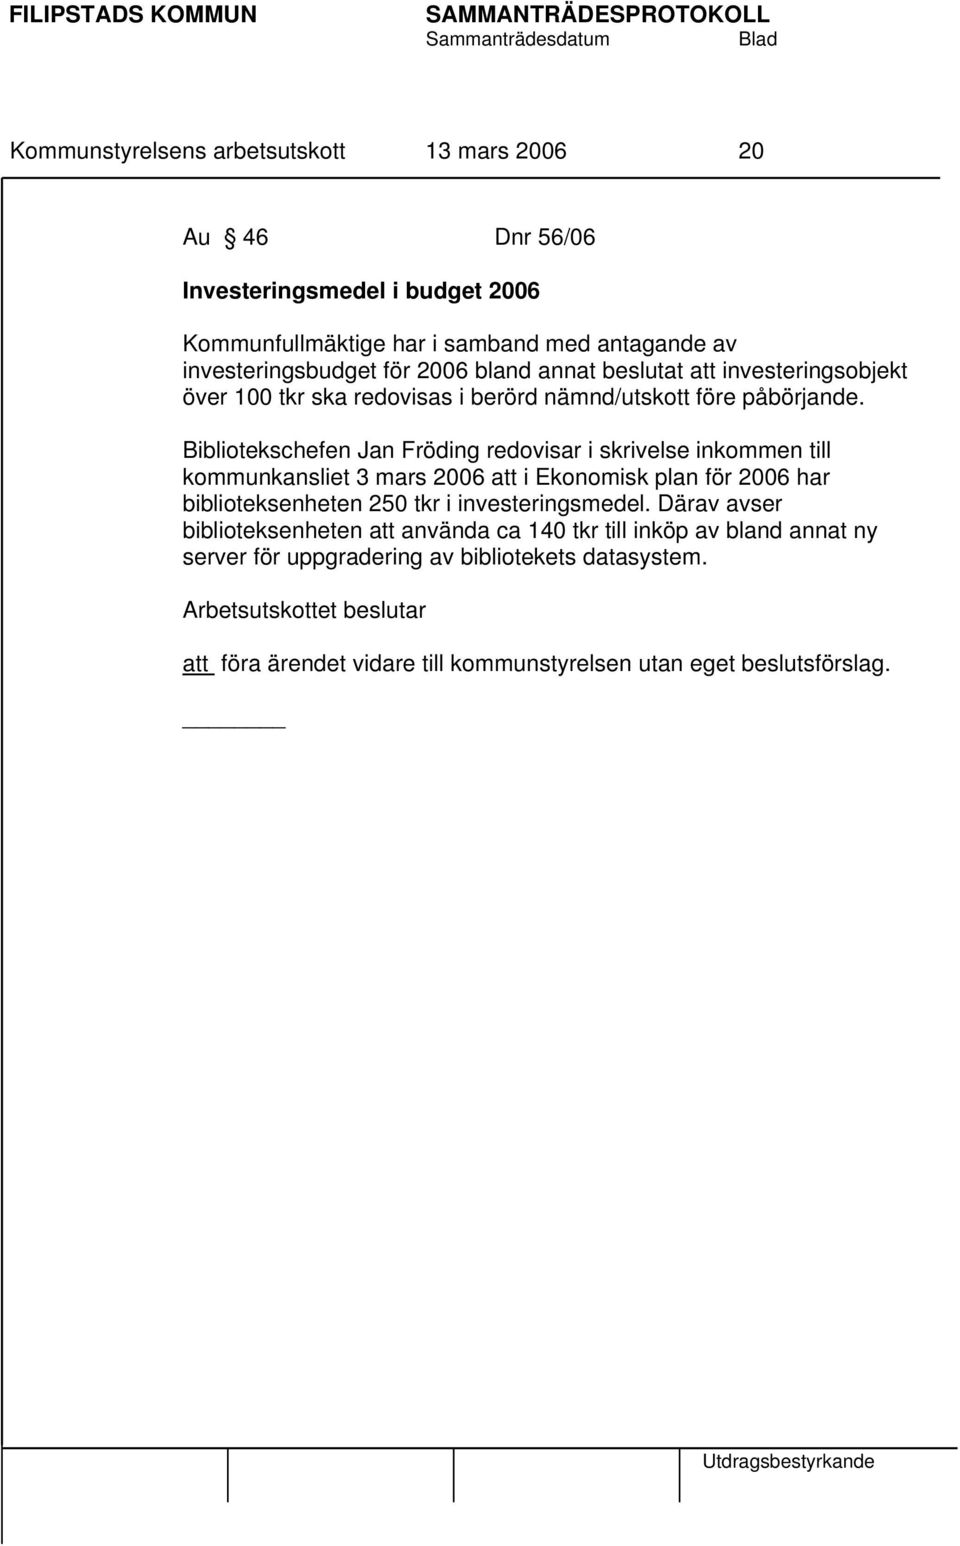 Bibliotekschefen Jan Fröding redovisar i skrivelse inkommen till kommunkansliet 3 mars 2006 att i Ekonomisk plan för 2006 har biblioteksenheten 250 tkr i investeringsmedel.